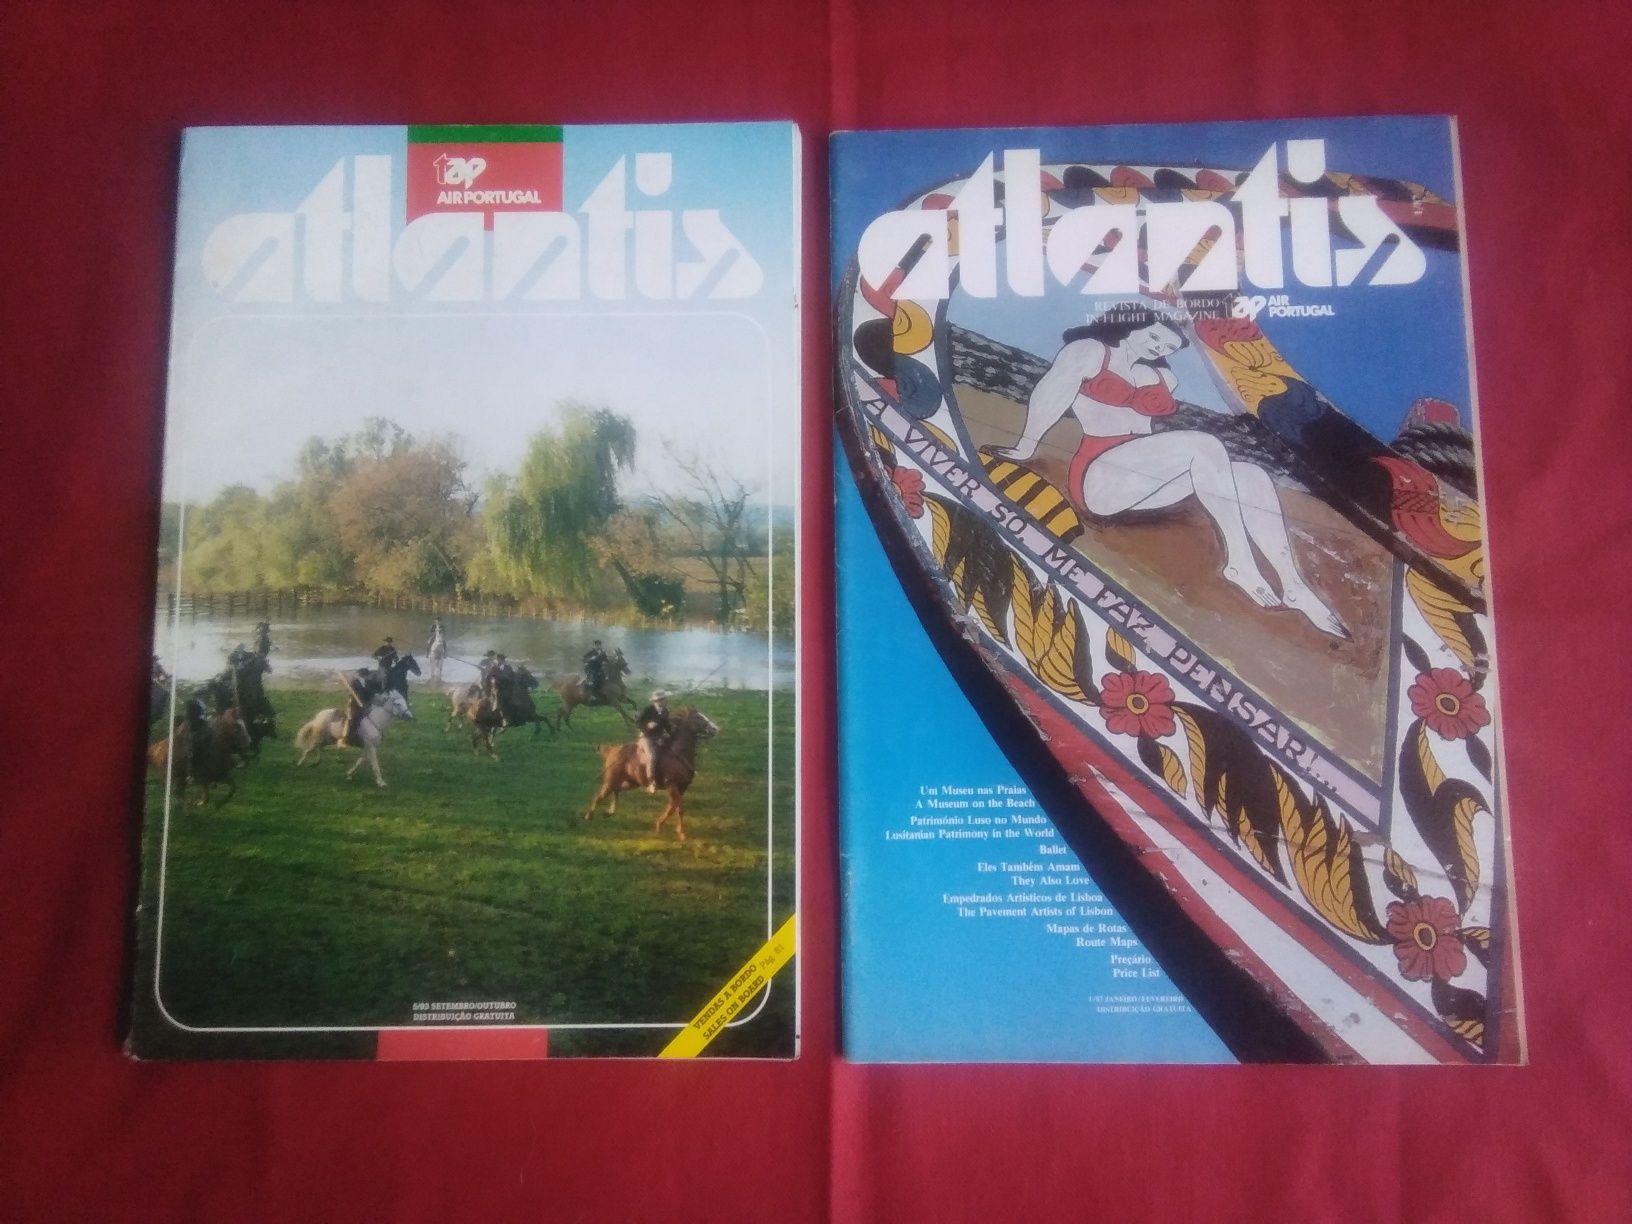 Lote de 12 revistas Atlantis antigas de TAP Air Portugal.